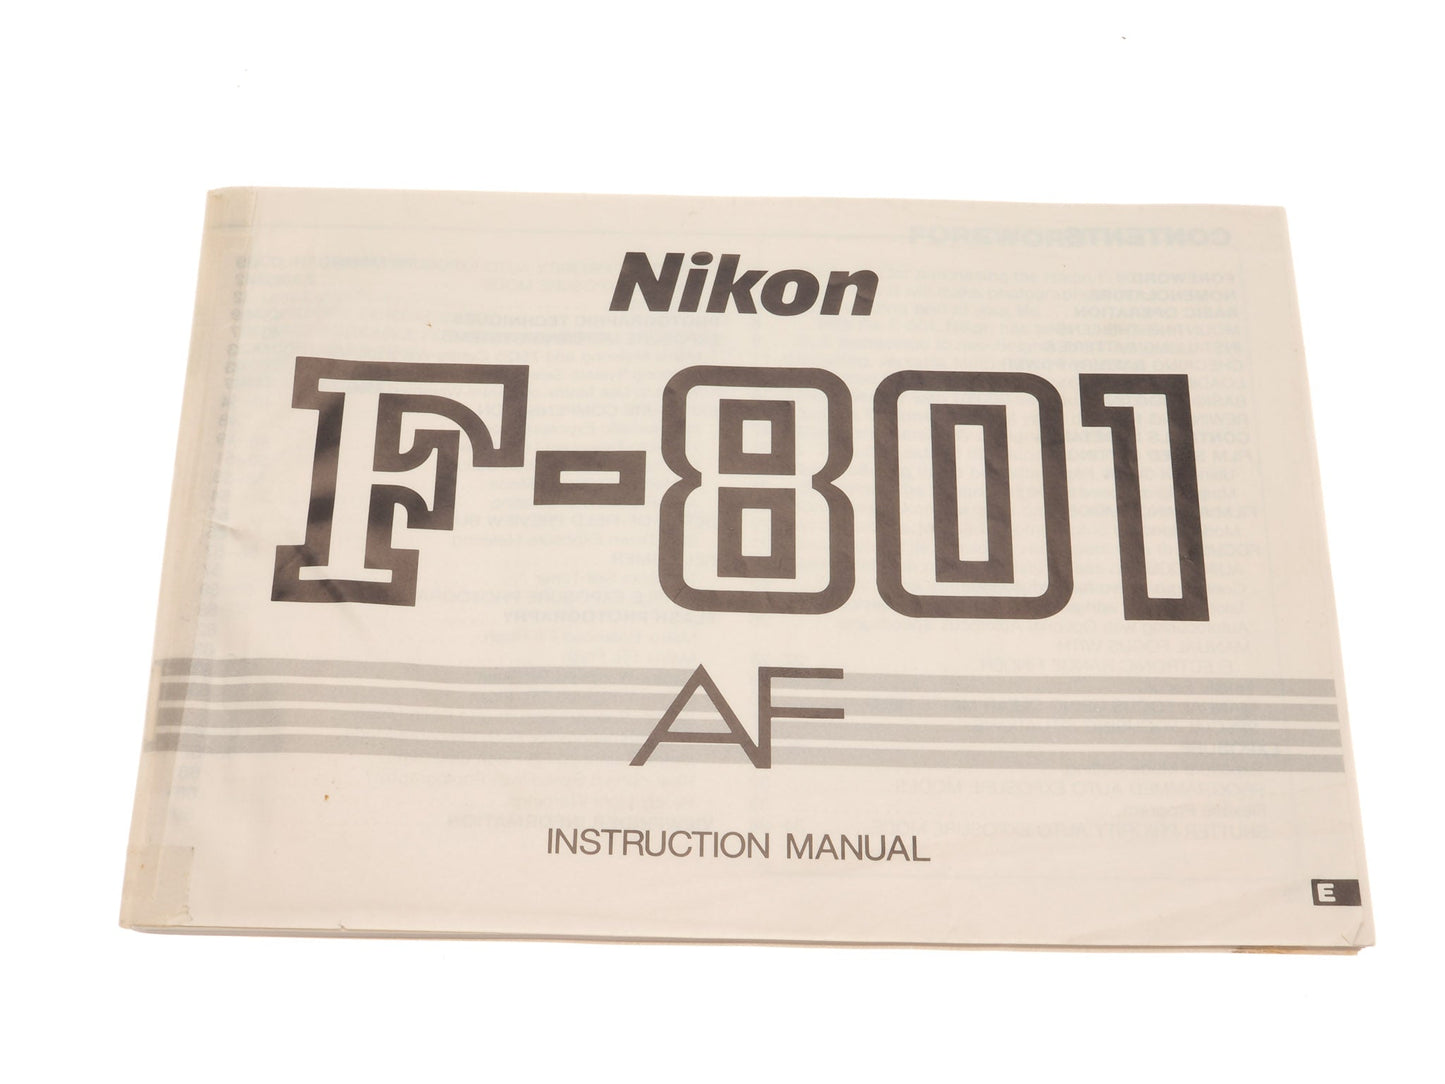 Nikon F-801 AF Instructions